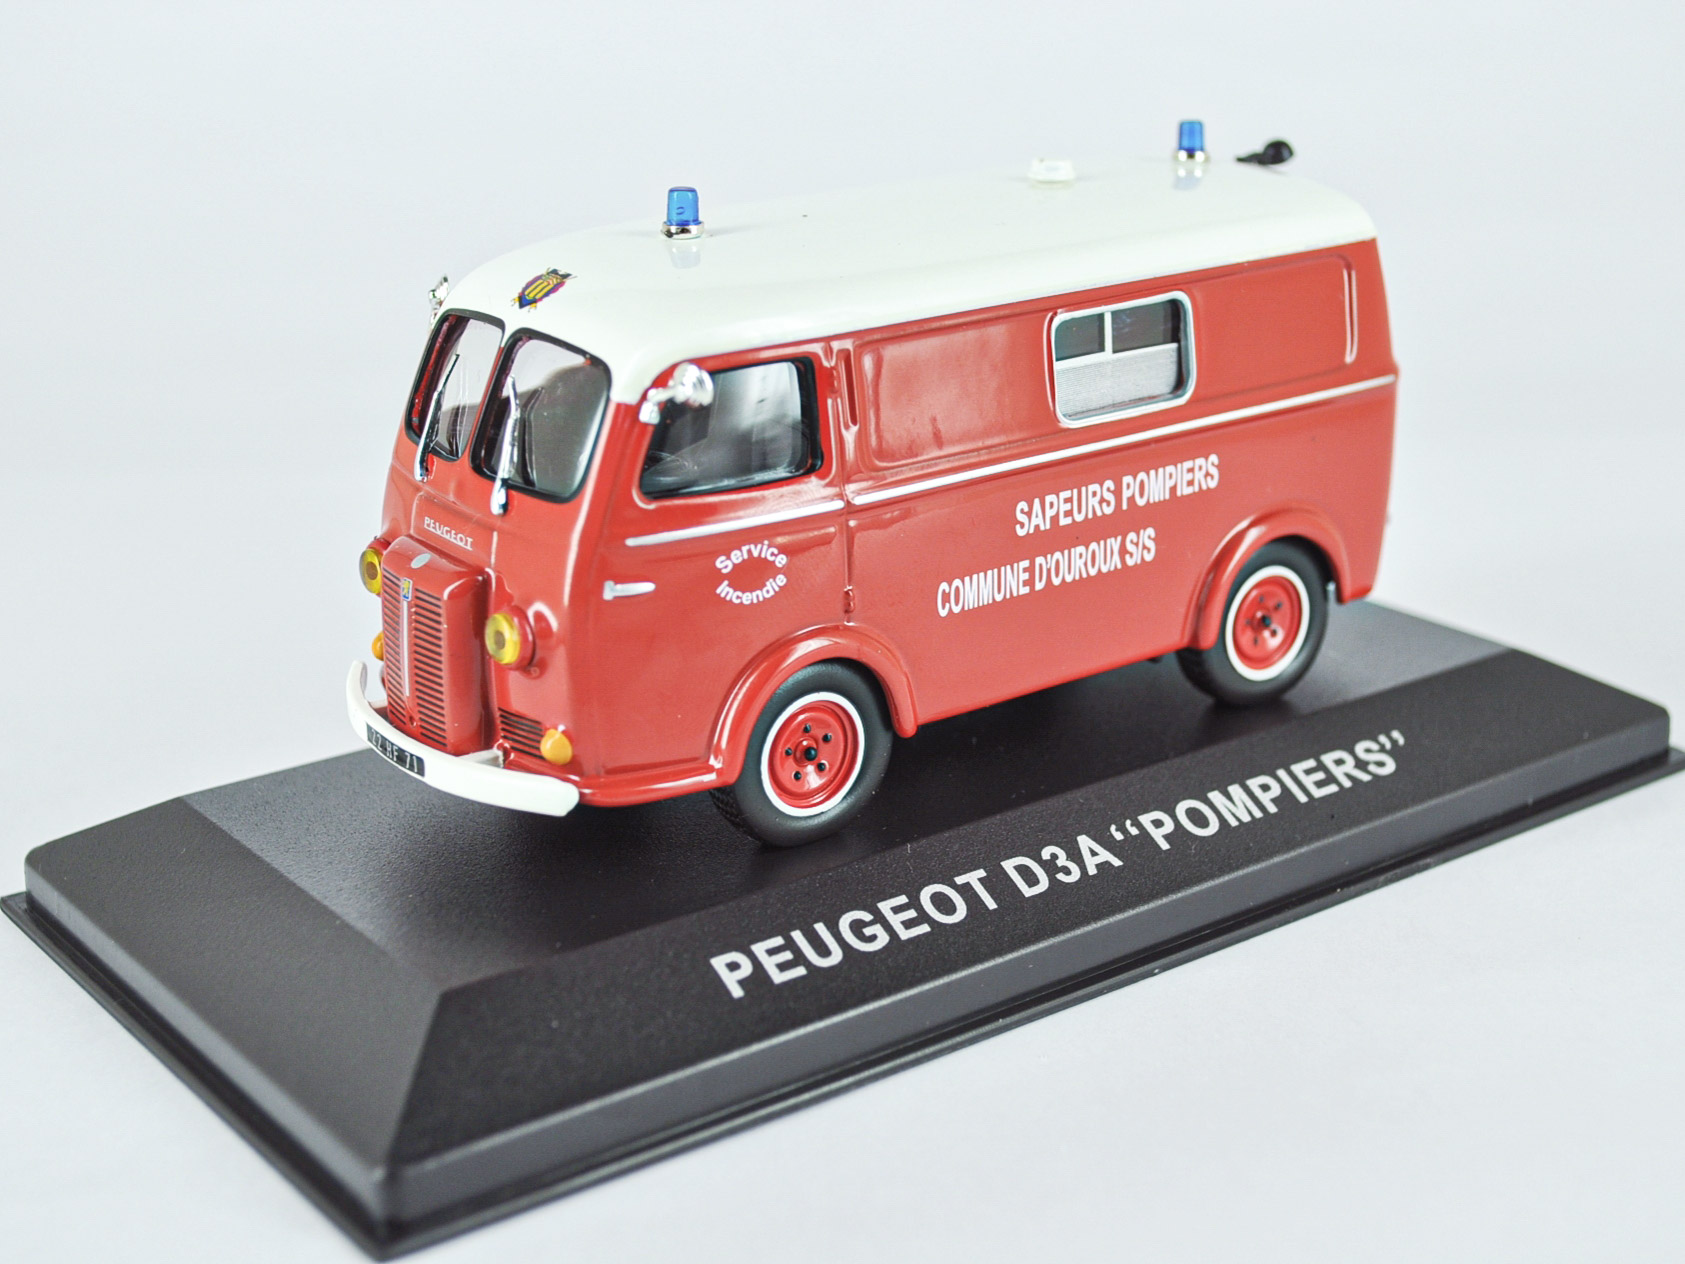 Peugeot D3A "POMPIERS"